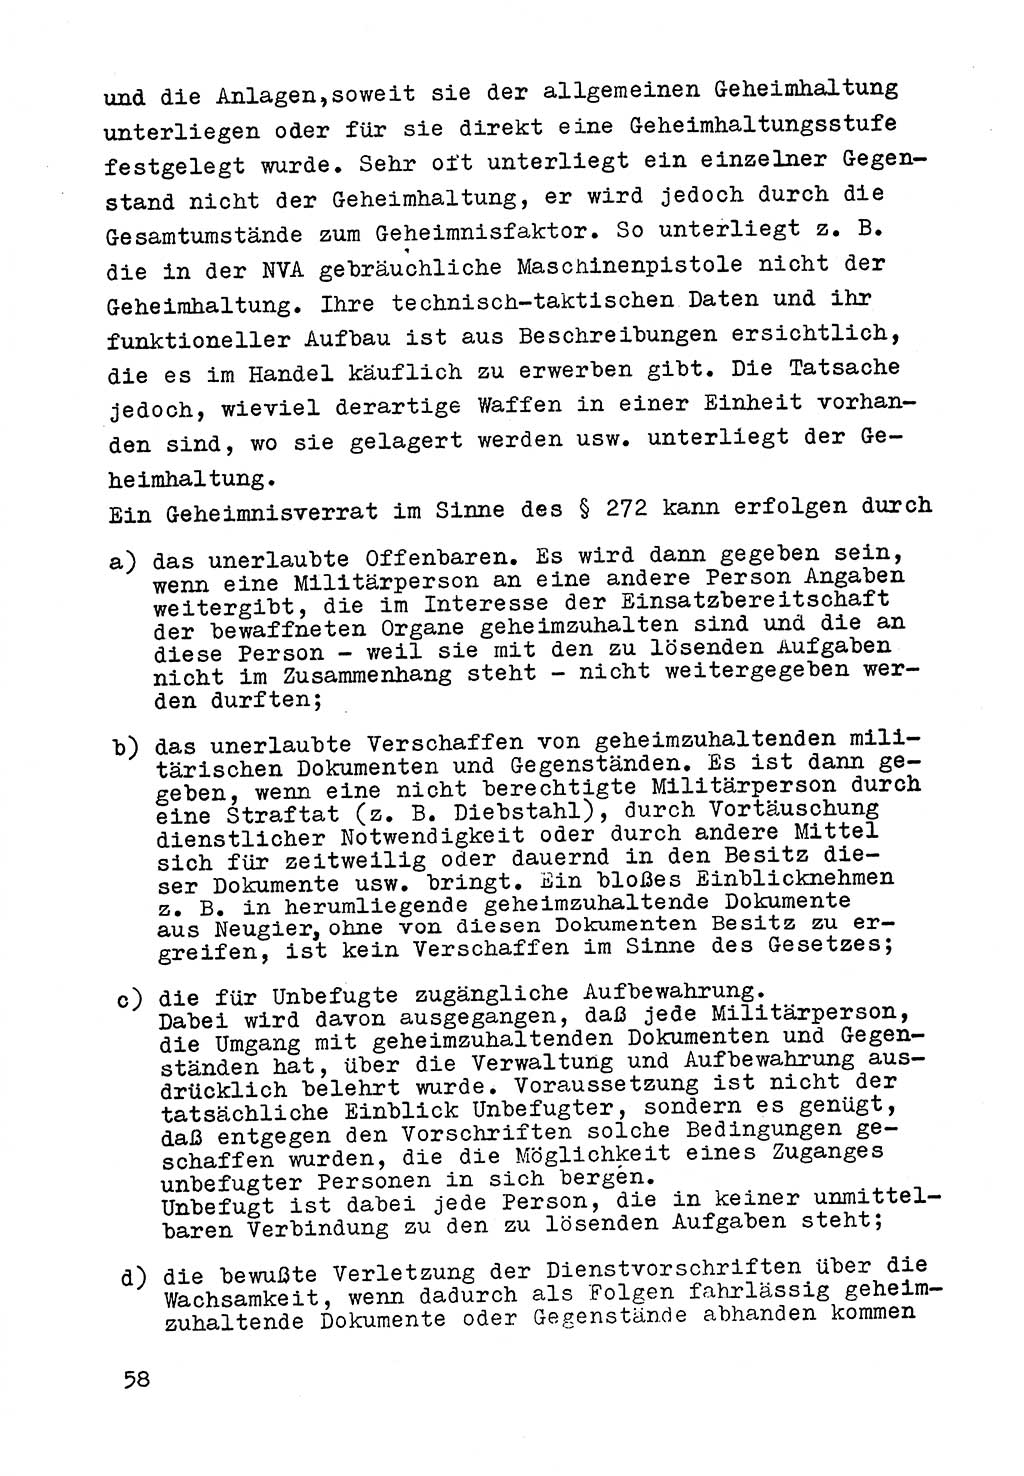 Strafrecht der DDR (Deutsche Demokratische Republik), Besonderer Teil, Lehrmaterial, Heft 9 1969, Seite 58 (Strafr. DDR BT Lehrmat. H. 9 1969, S. 58)